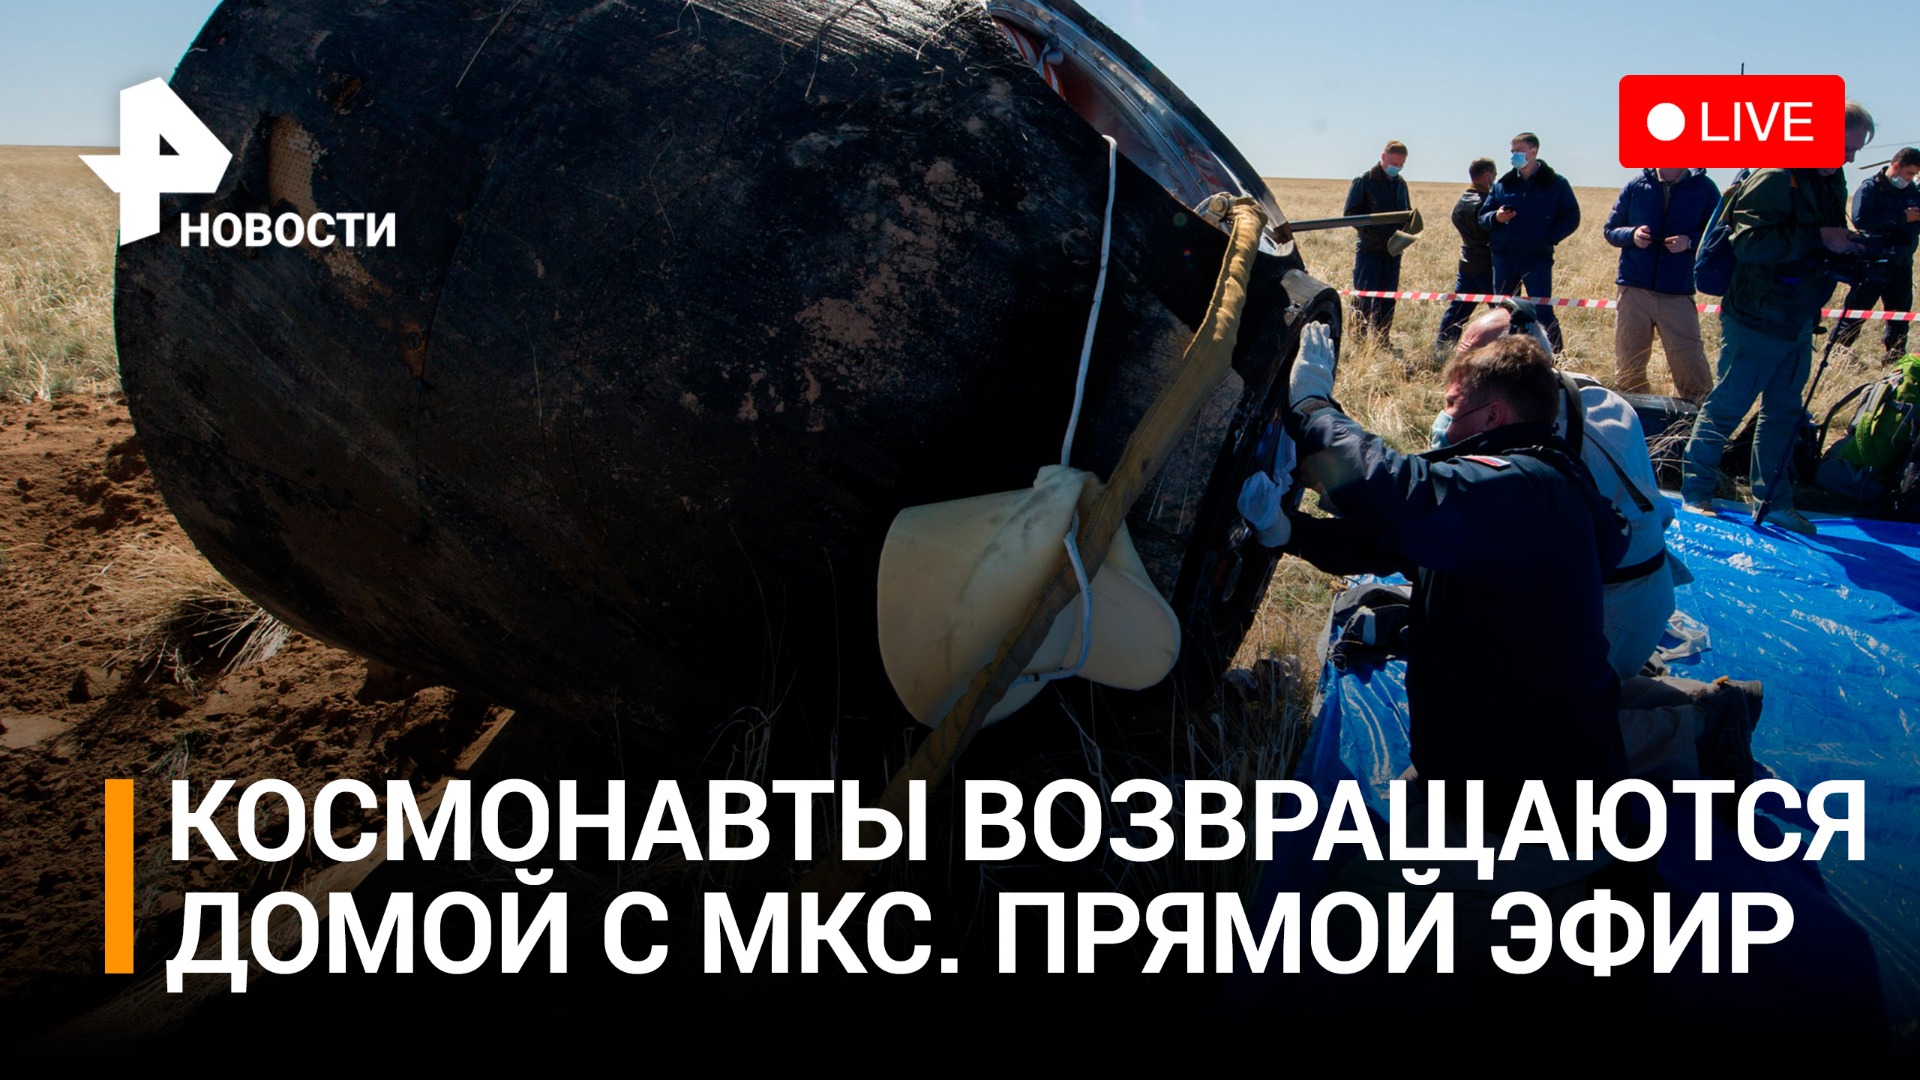 Космонавты "Роскосмоса" возвращаются домой. Сход с орбиты и приземление: прямой эфир / РЕН Новости